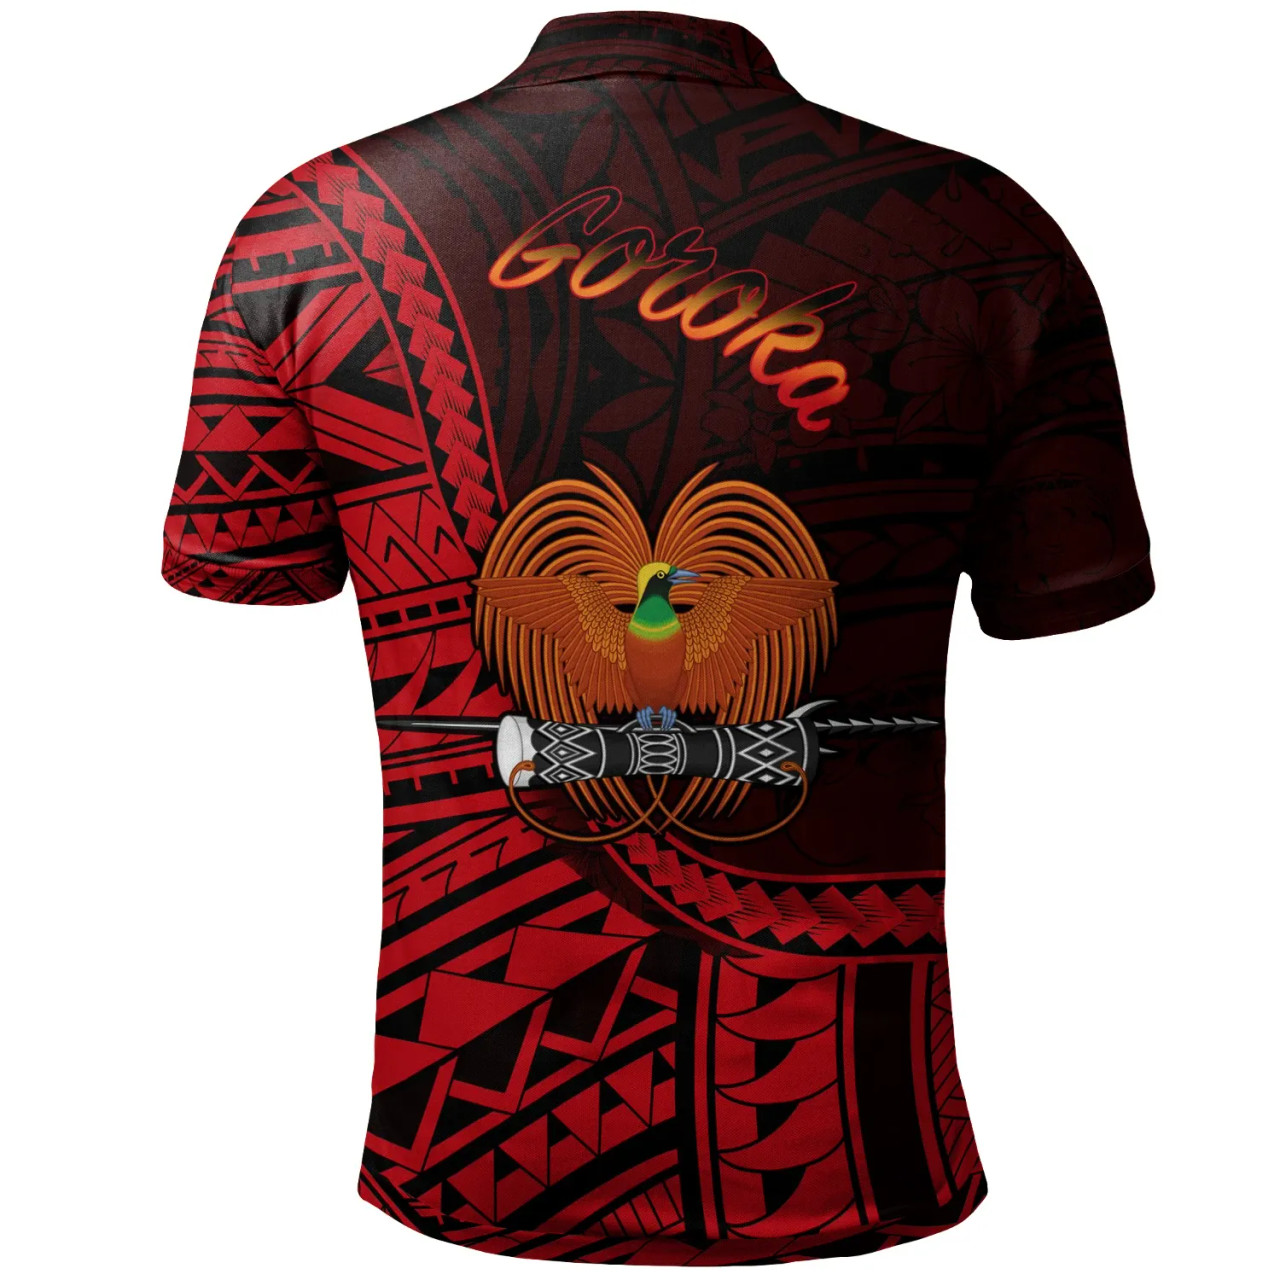 Papua New Guinea Polo Shirt - Goroka Polynesian Patterns 2